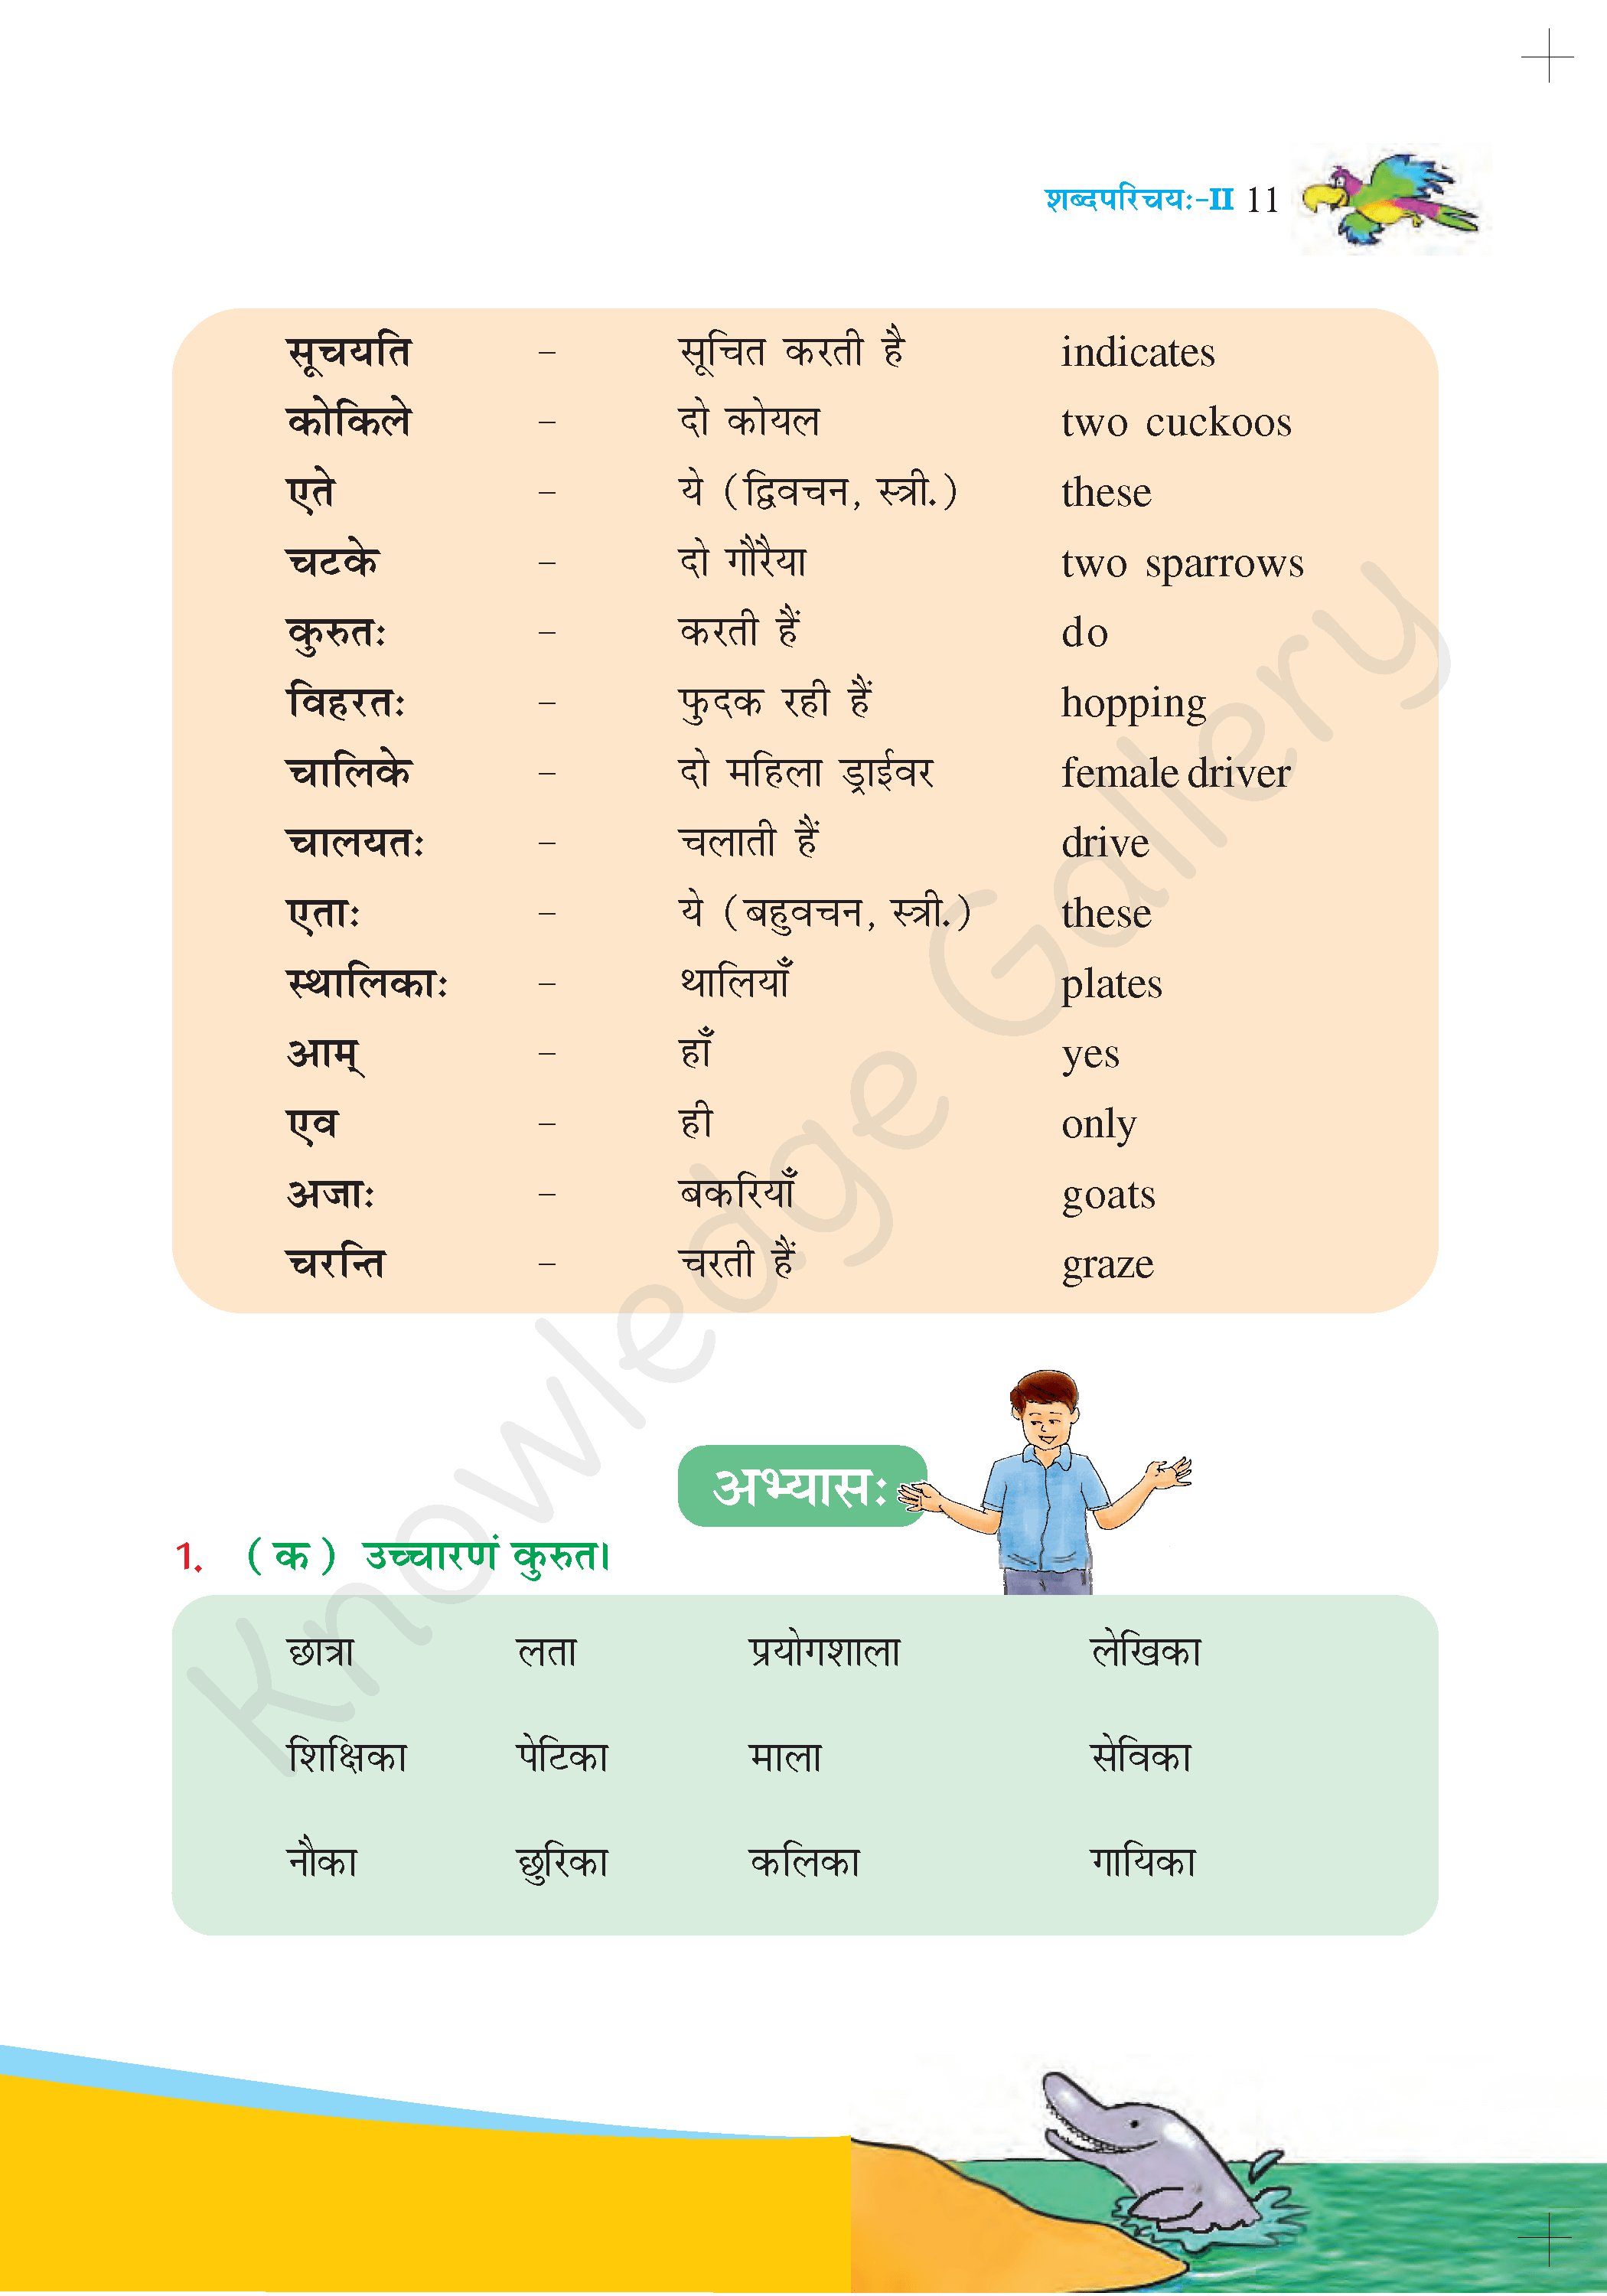 NCERT Solution For Class 6 Sanskrit Chapter 2 part 3